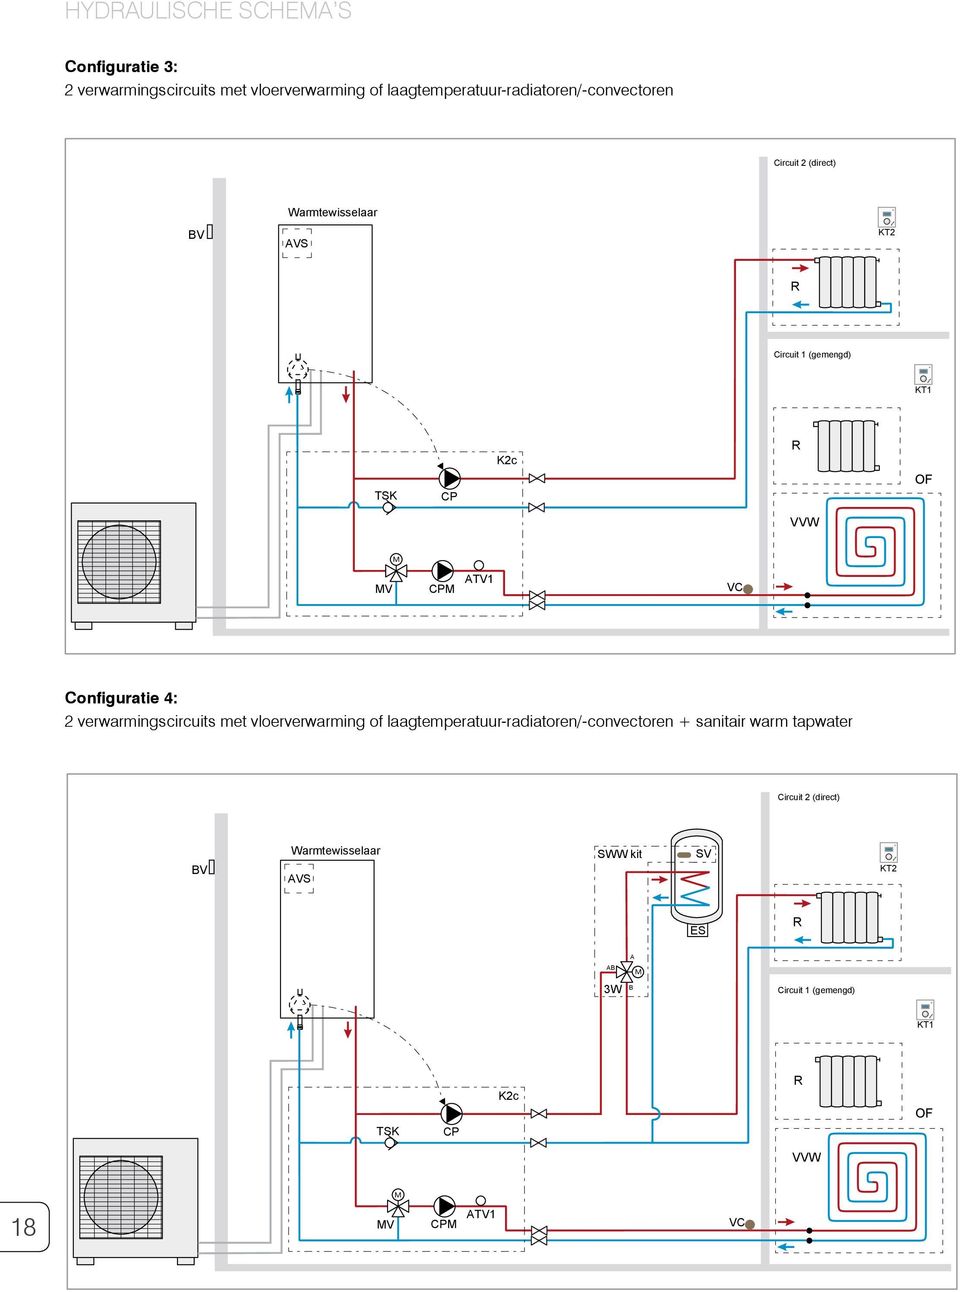 Configuratie 4: 2 verwarmingscircuits met vloerverwarming of laagtemperatuurradiatoren/convectoren + sanitair warm tapwater